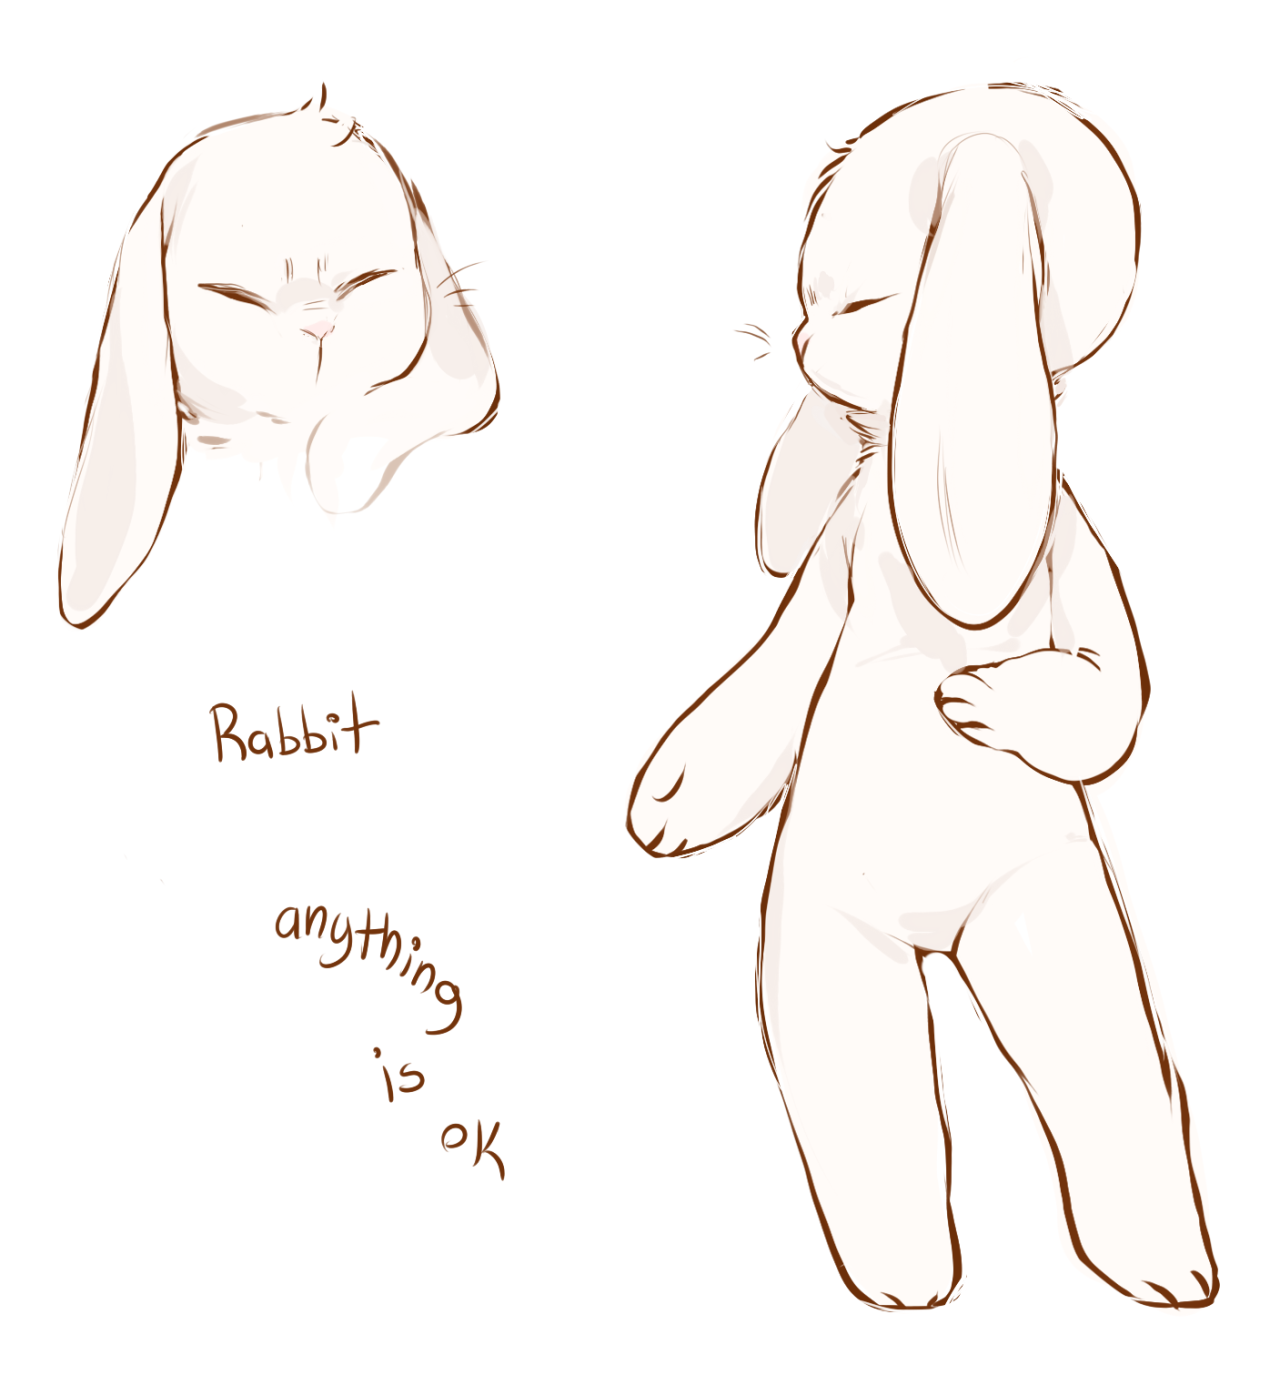 rabbit - Weasyl